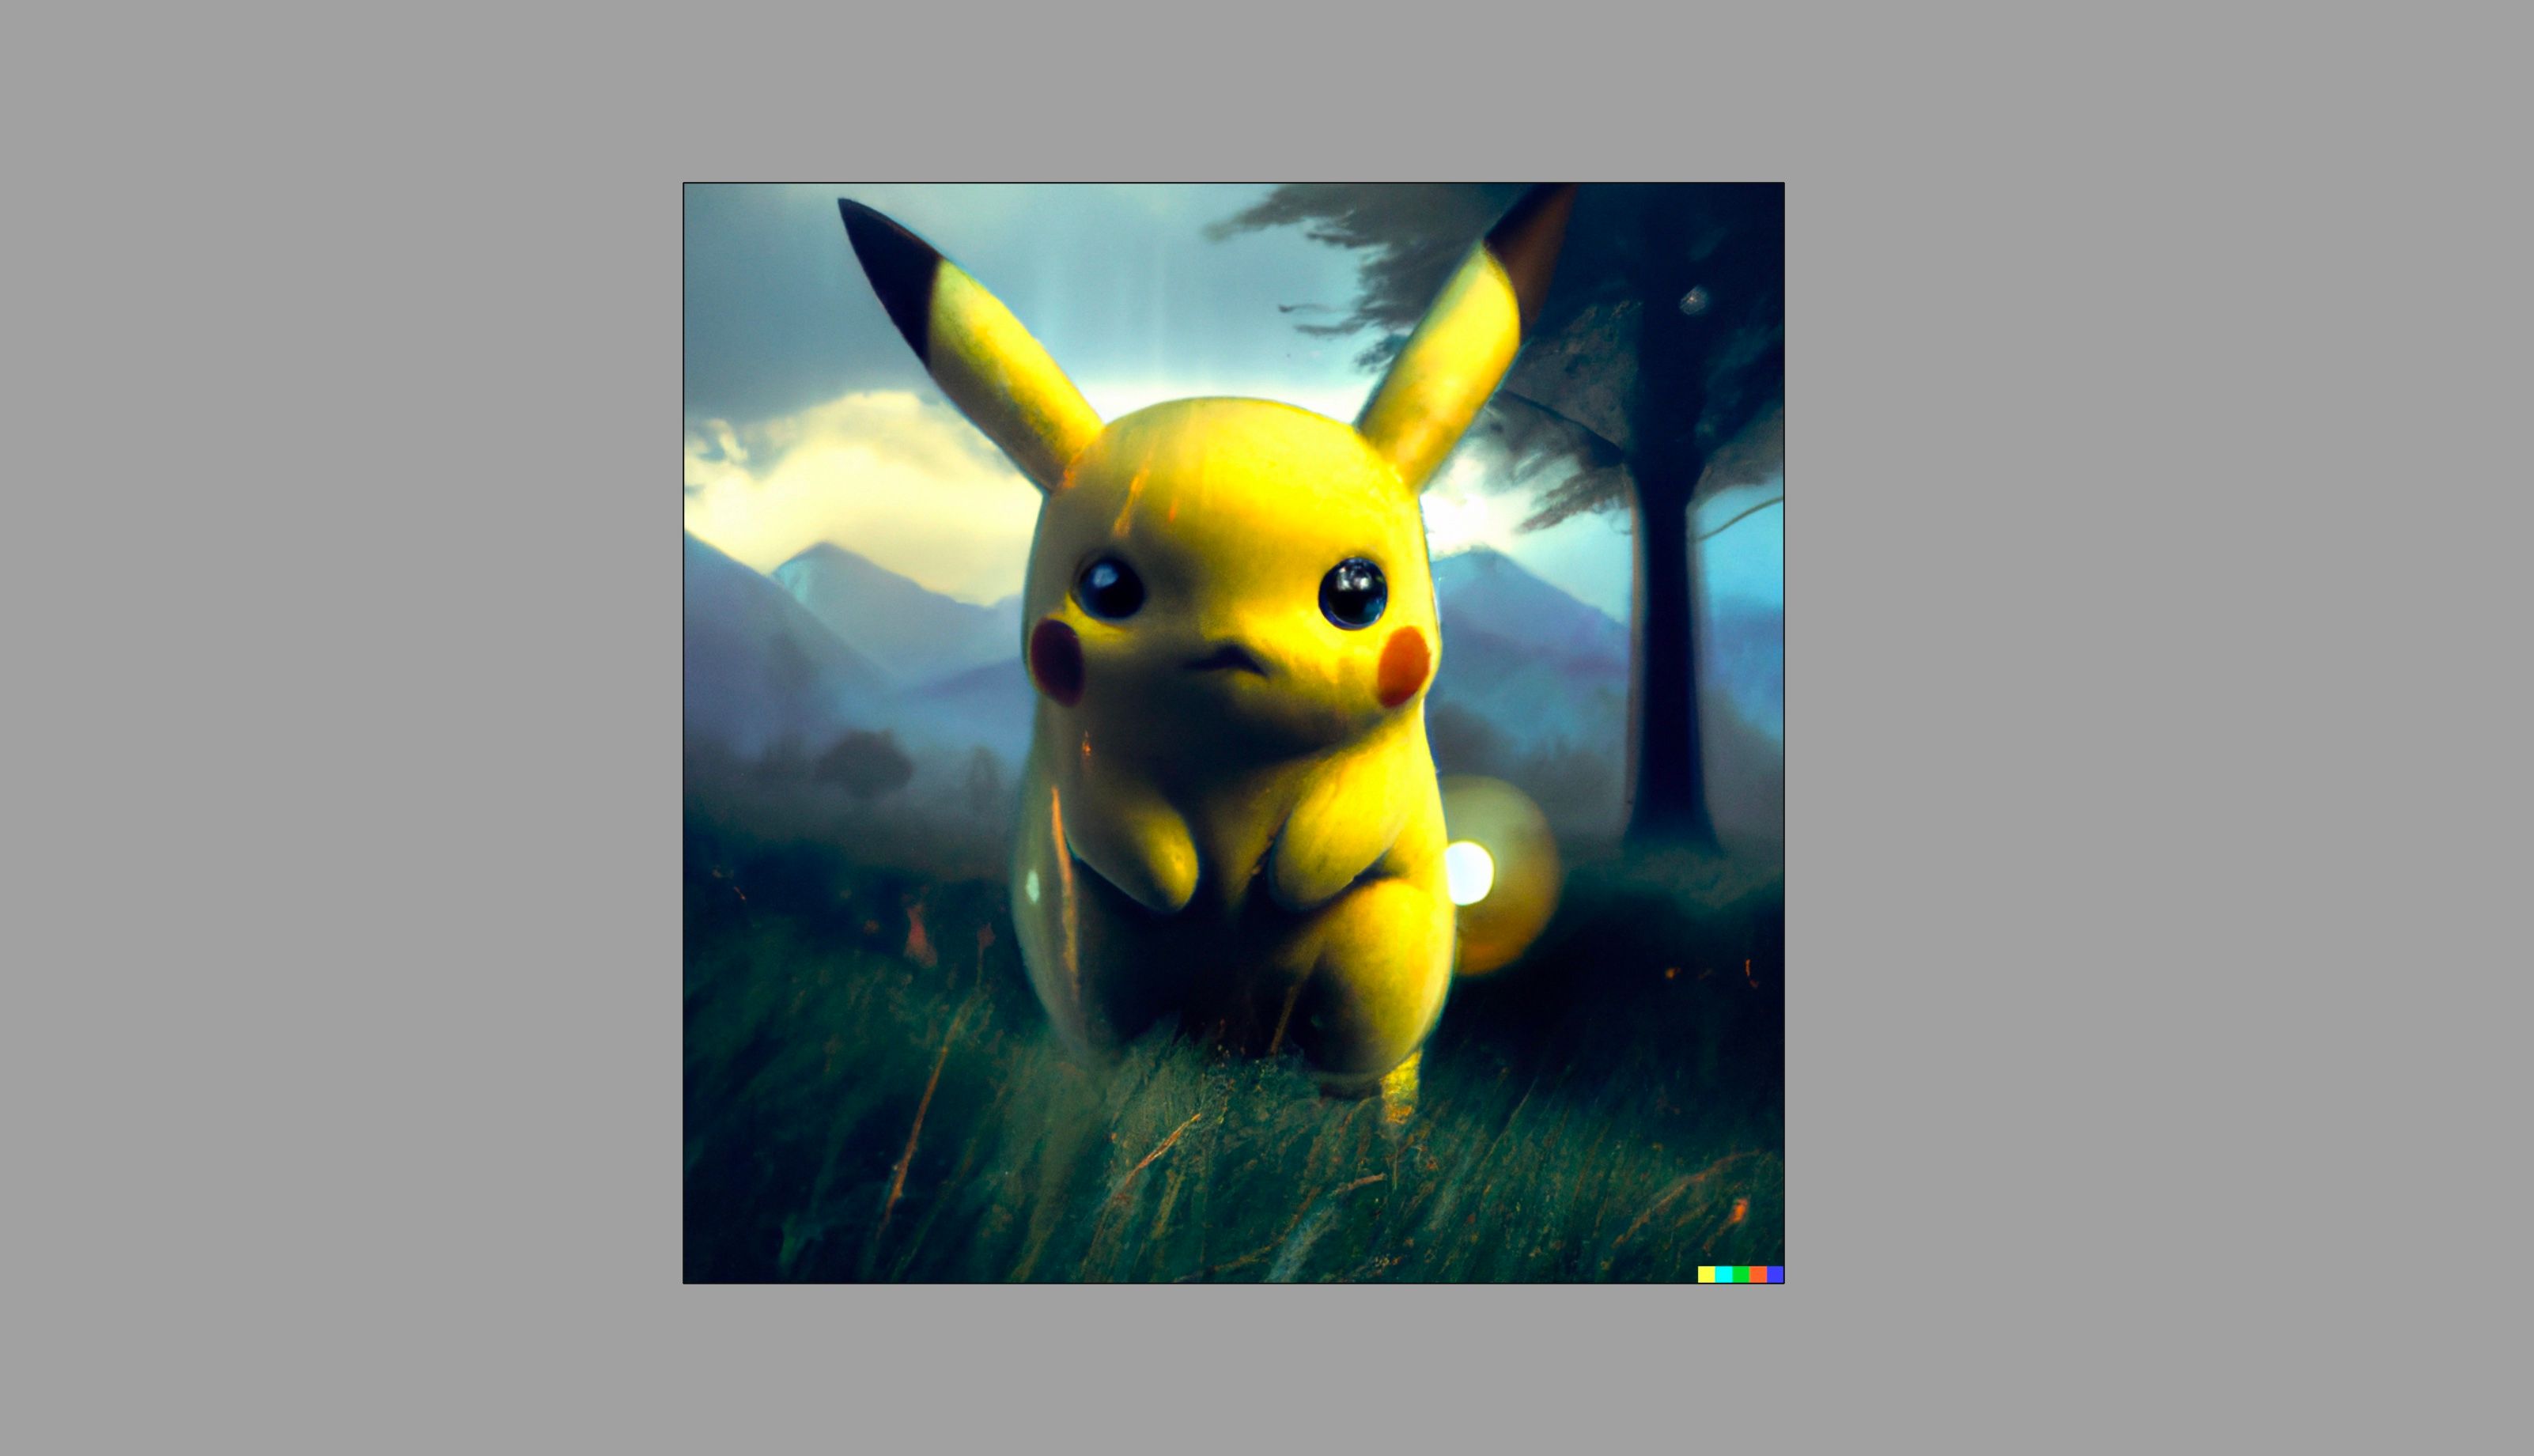 Art numérique de Pikachu généré avec Dall-E